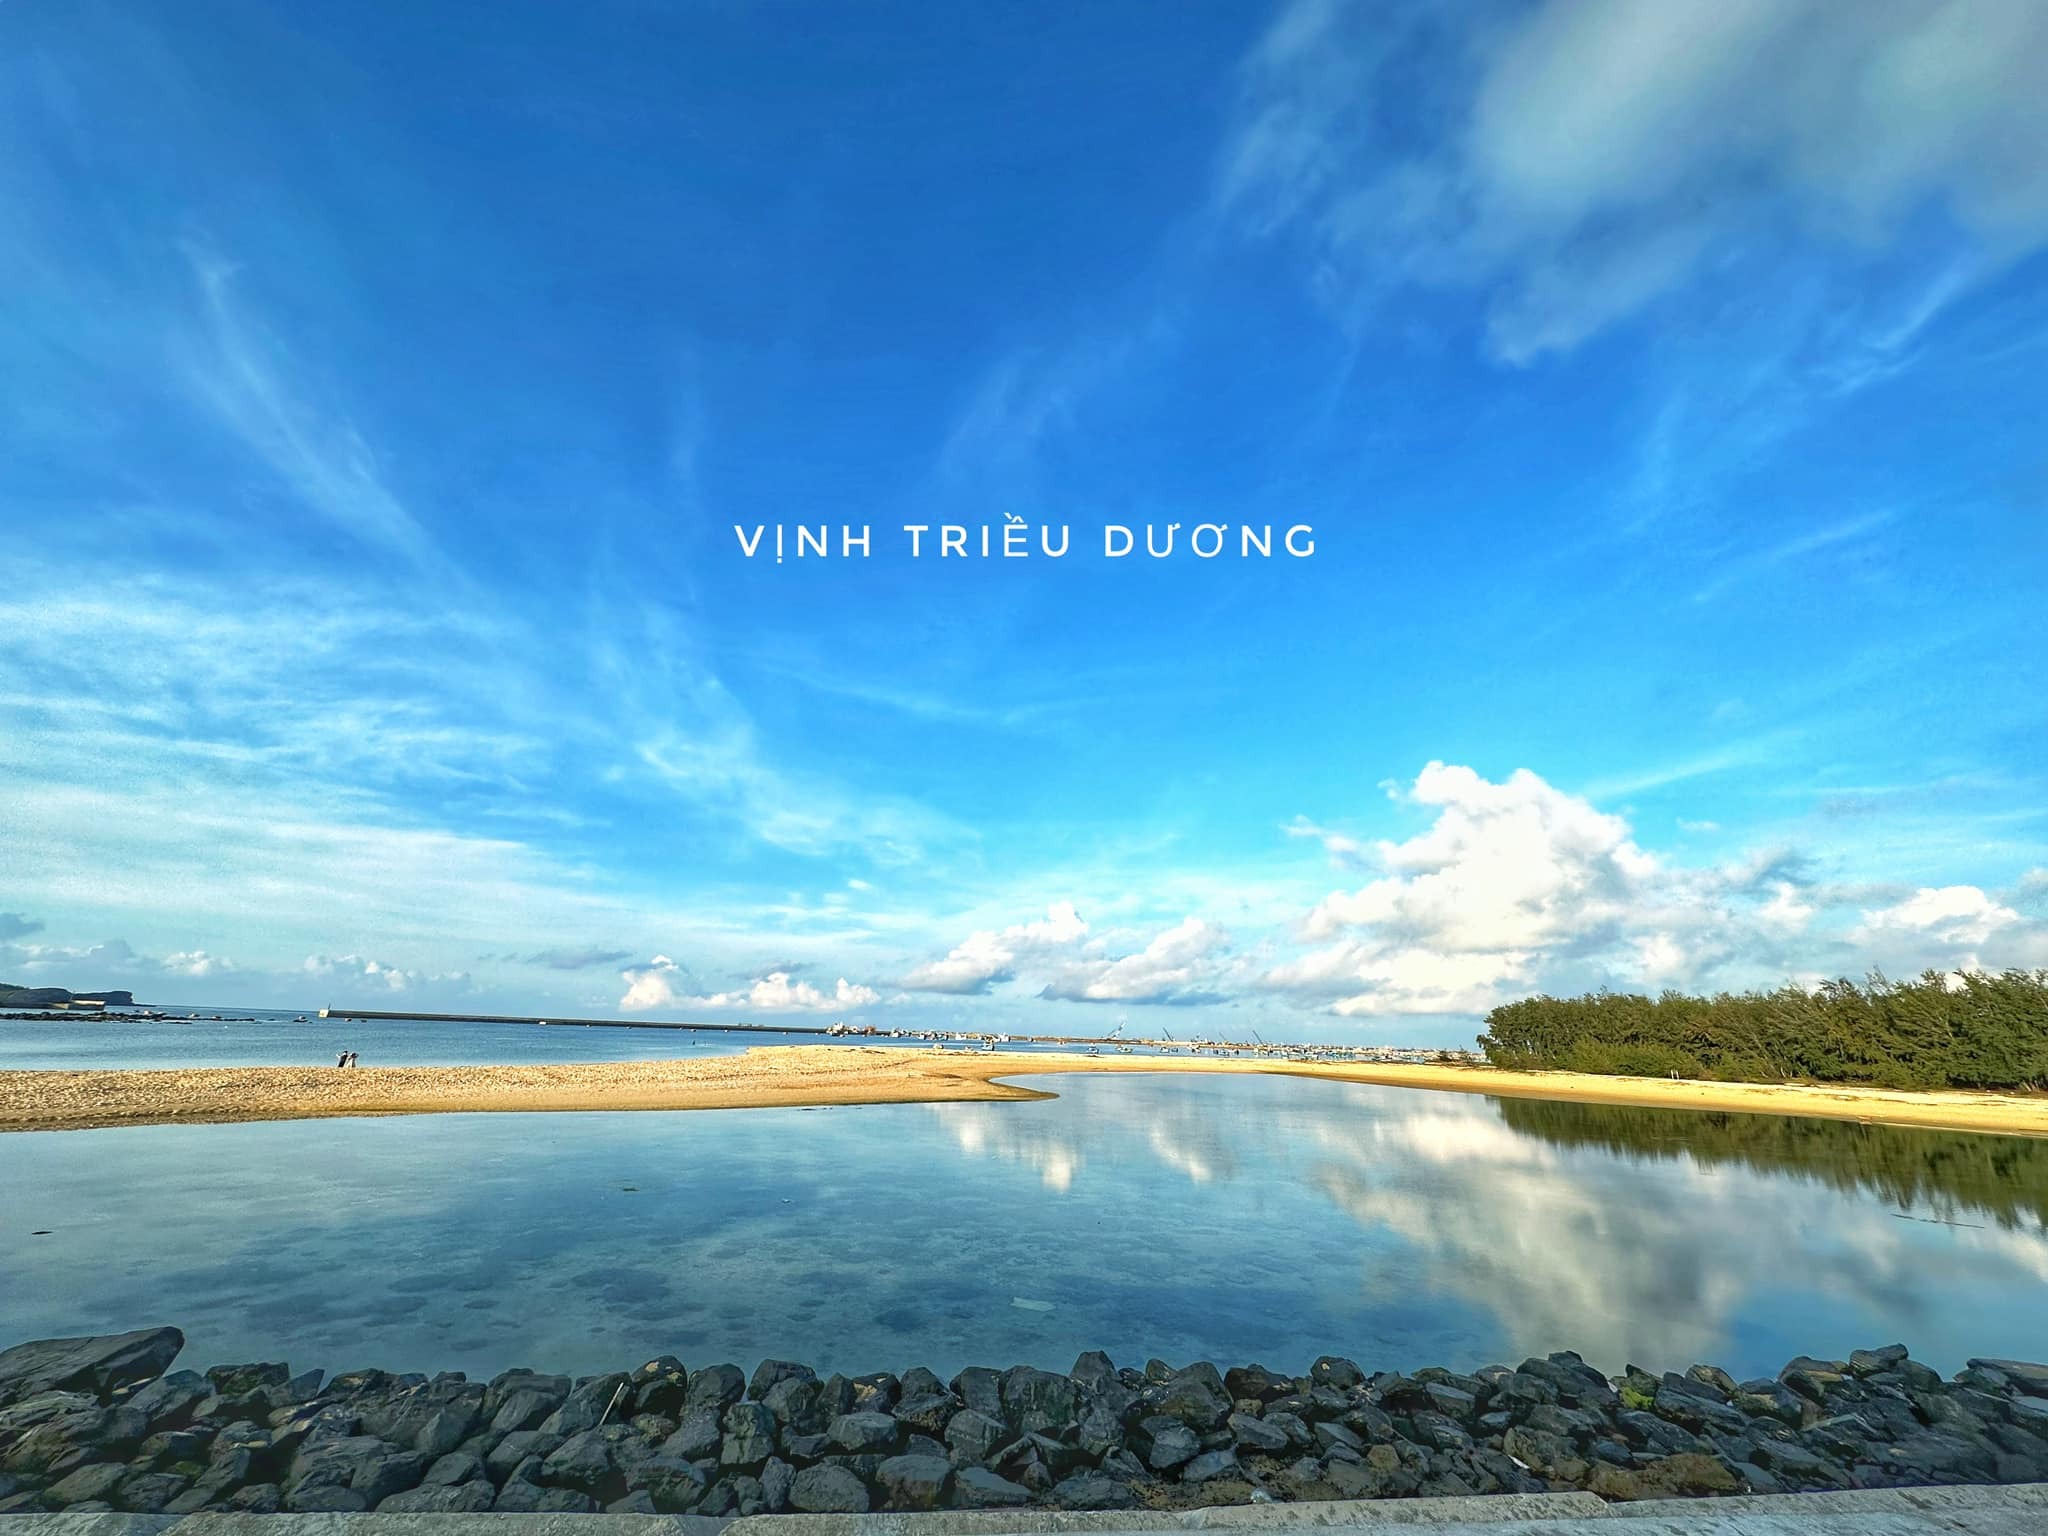 Khám phá thêm nhiều góc ảnh đẹp và lạ ở đảo Phú Quý - 13